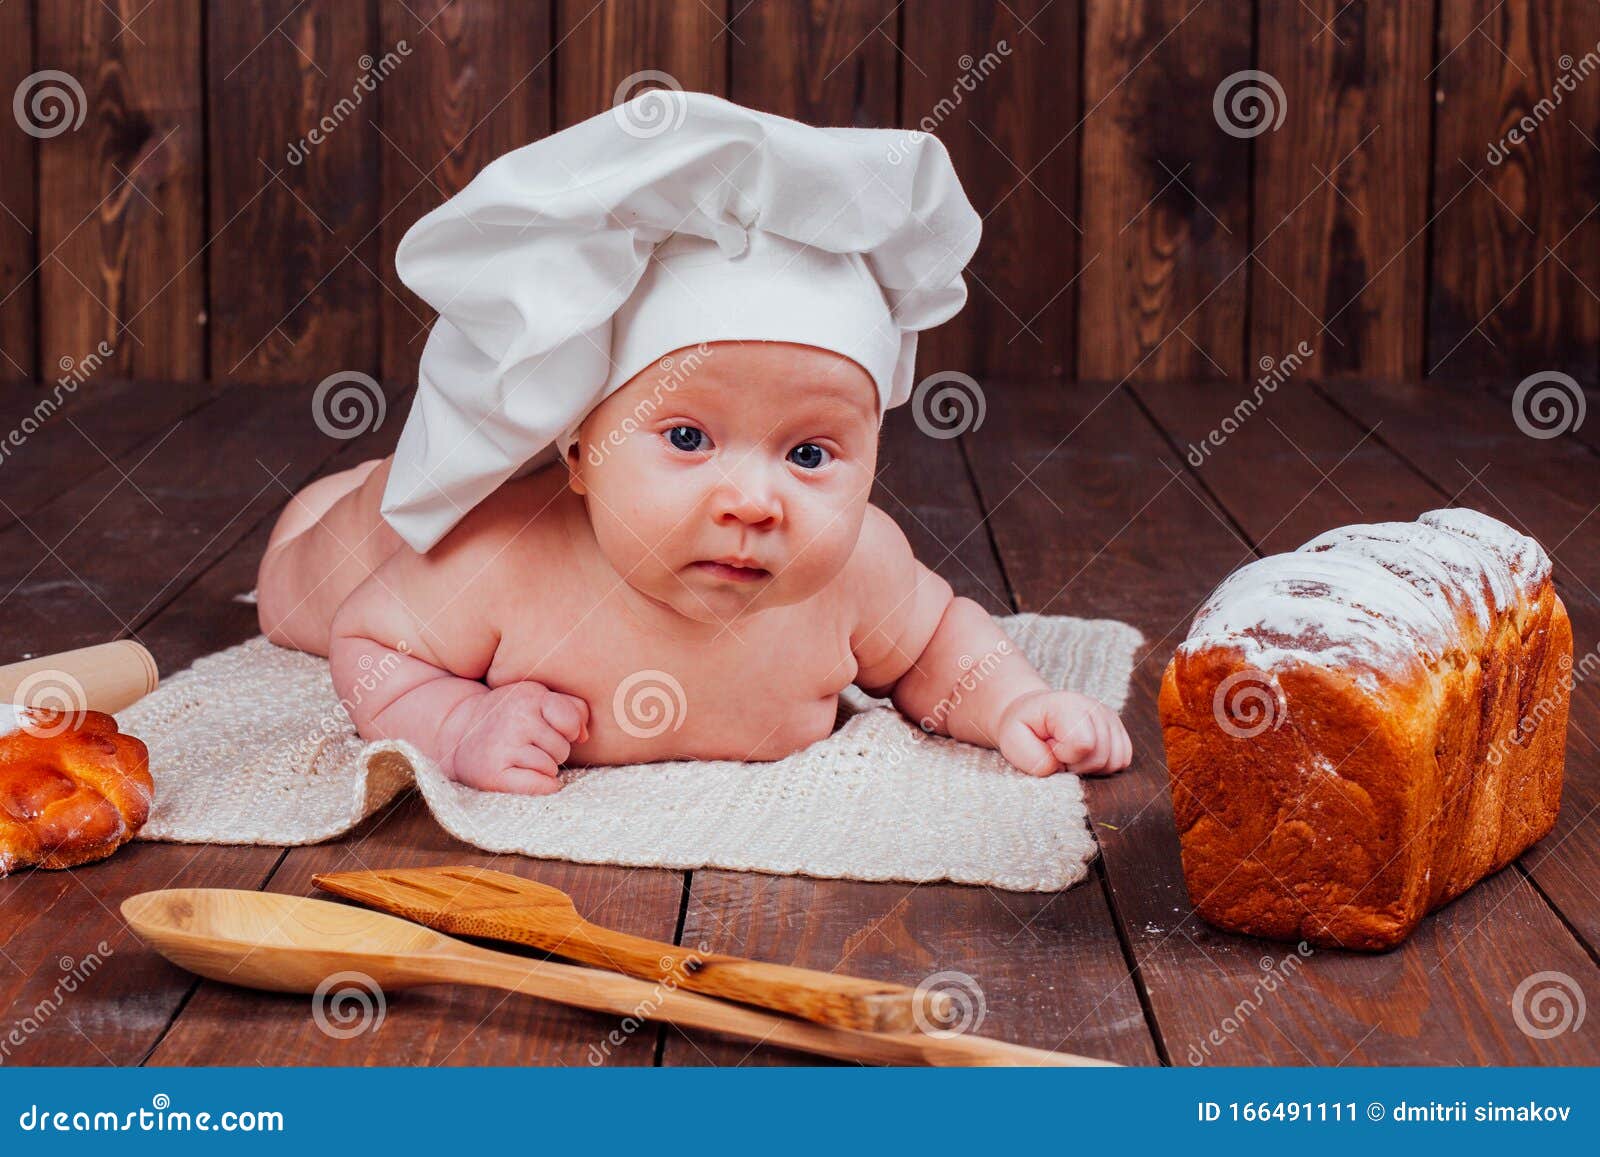 Baby Cook Yace Sobre La Harina De Pan De Mesa Imagen de archivo - Imagen de  manos, bebé: 166491111